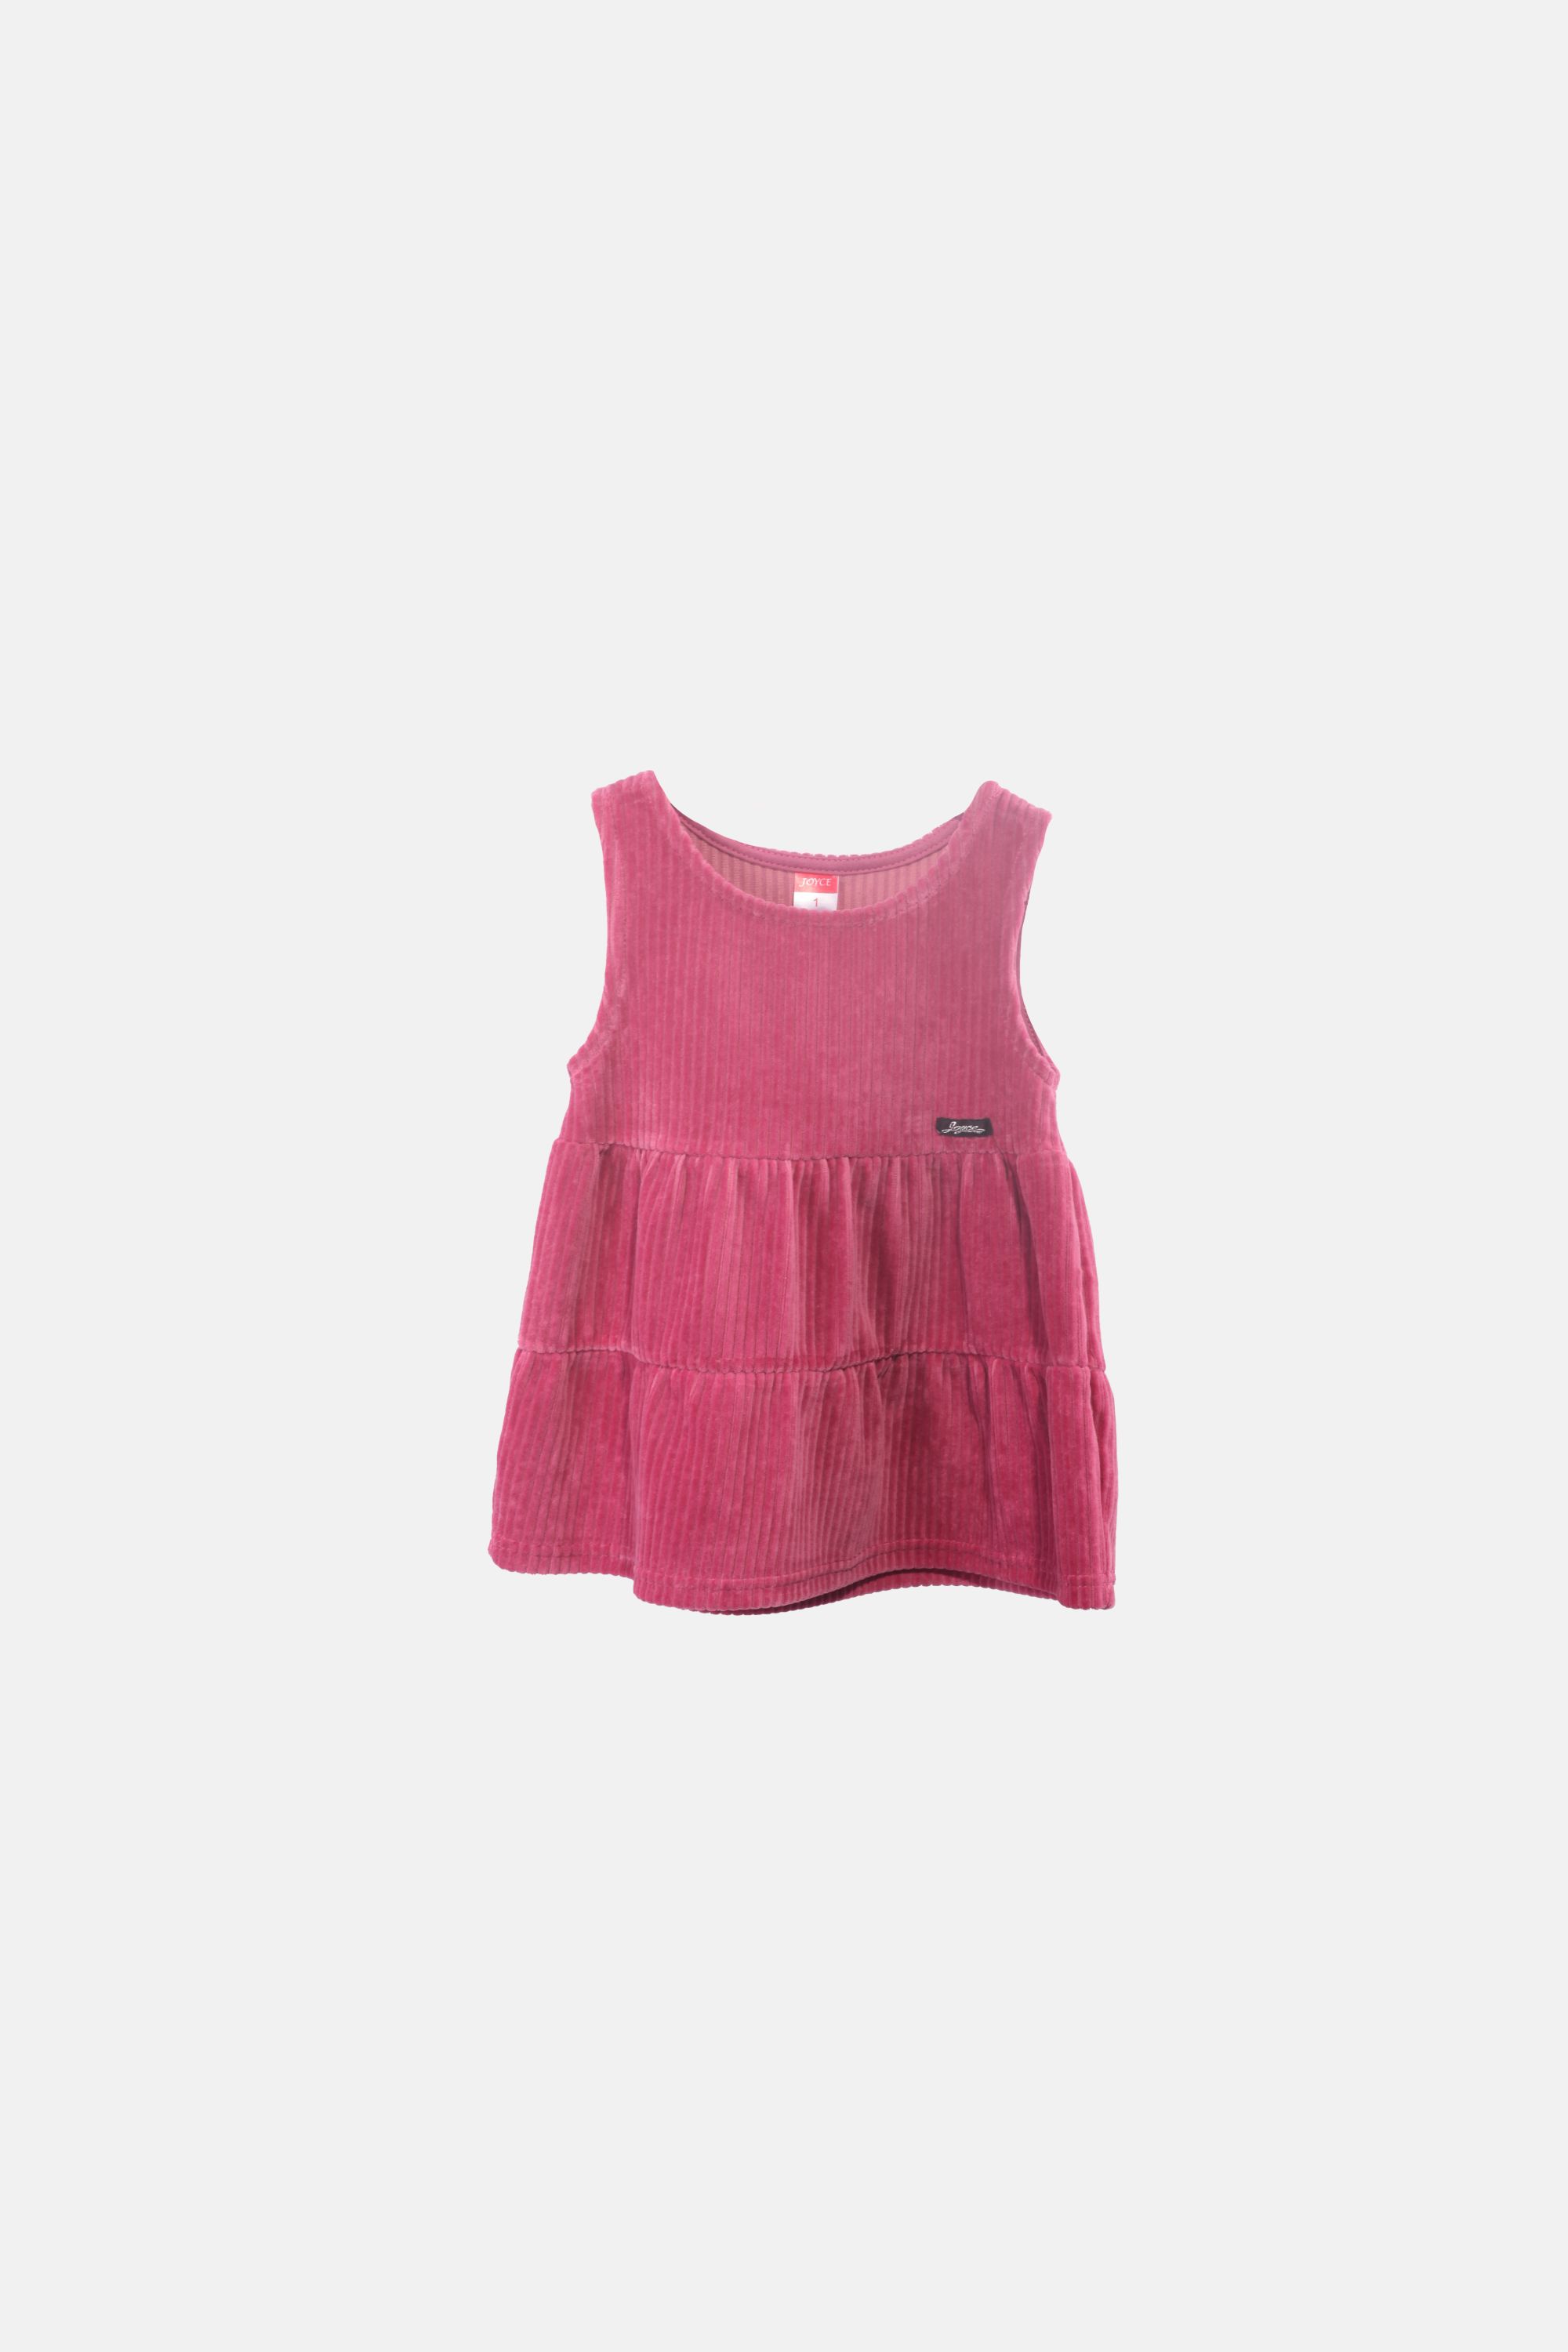 Dívčí velurové šaty "SARAFAN DRESS"/Šedá, růžová, zelená, hnědá Barva: Starorůžová, Velikost: vel. 2 (86/92 cm)